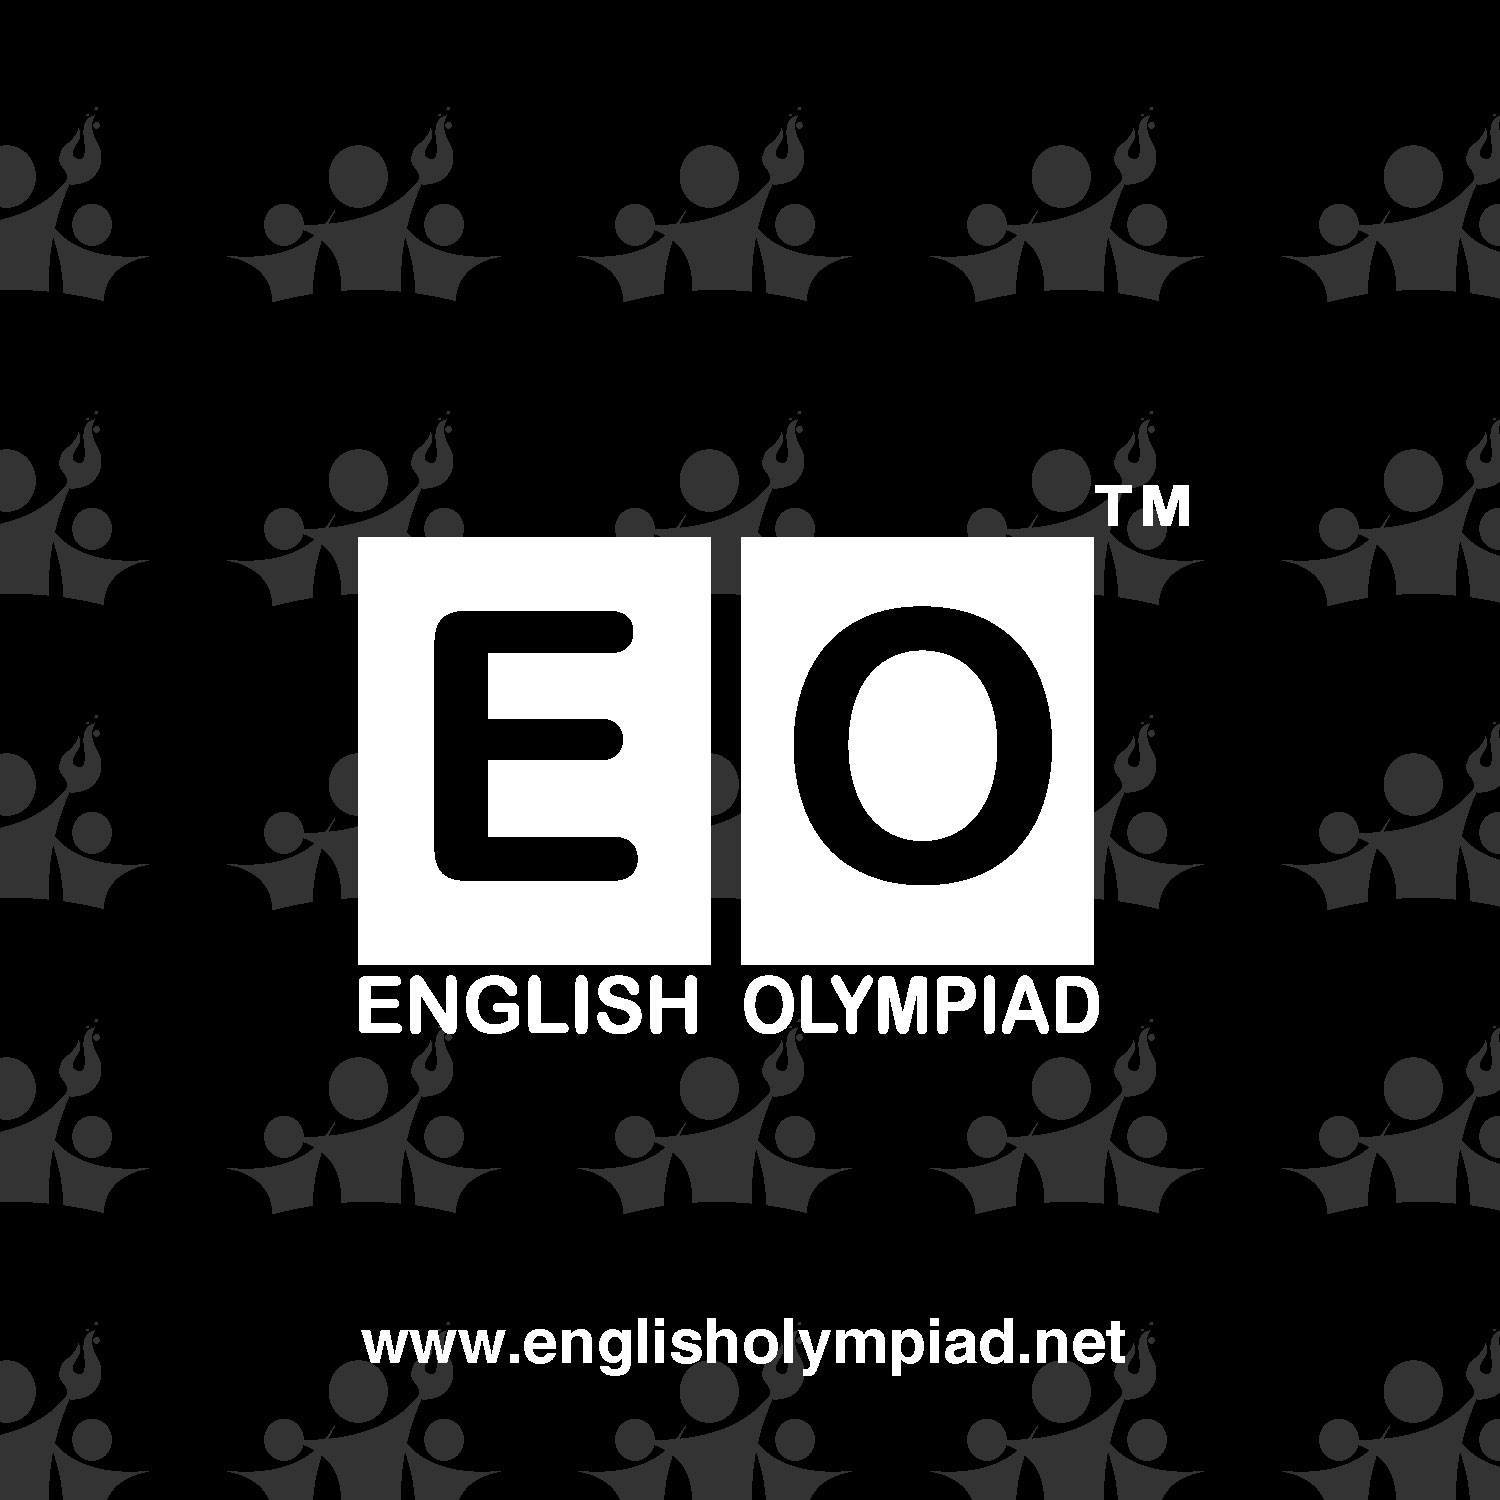 English Olympiad Global